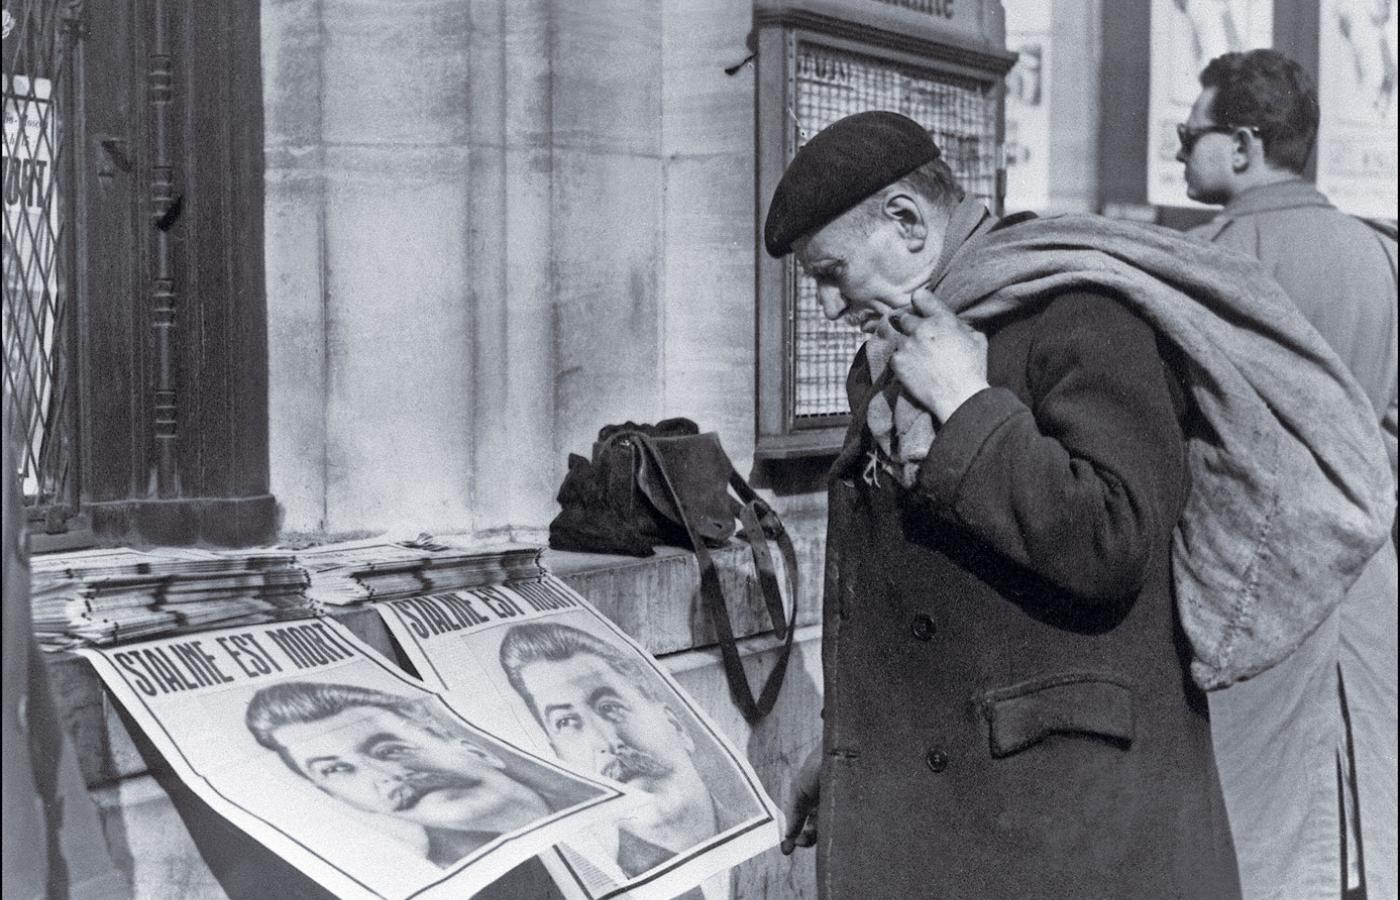 Plakaty ze Stalinem przed paryską siedzibą komunistycznego dziennika „L’Humanite”, marzec 1953 r. Wpływy FPK były silne po wojnie, ale z czasem słabły.